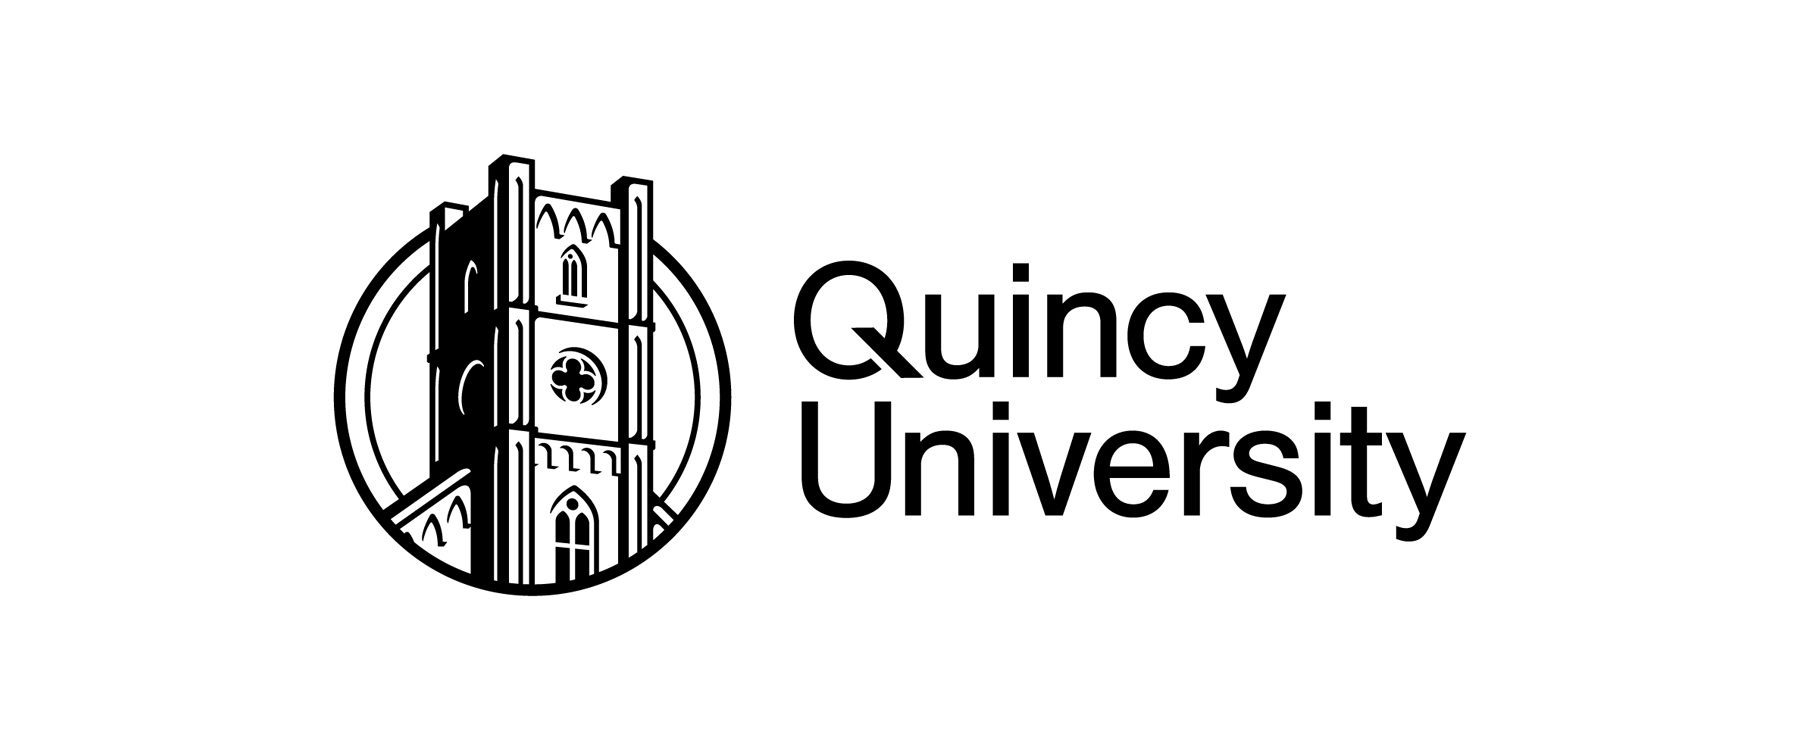 Quincy Unversity